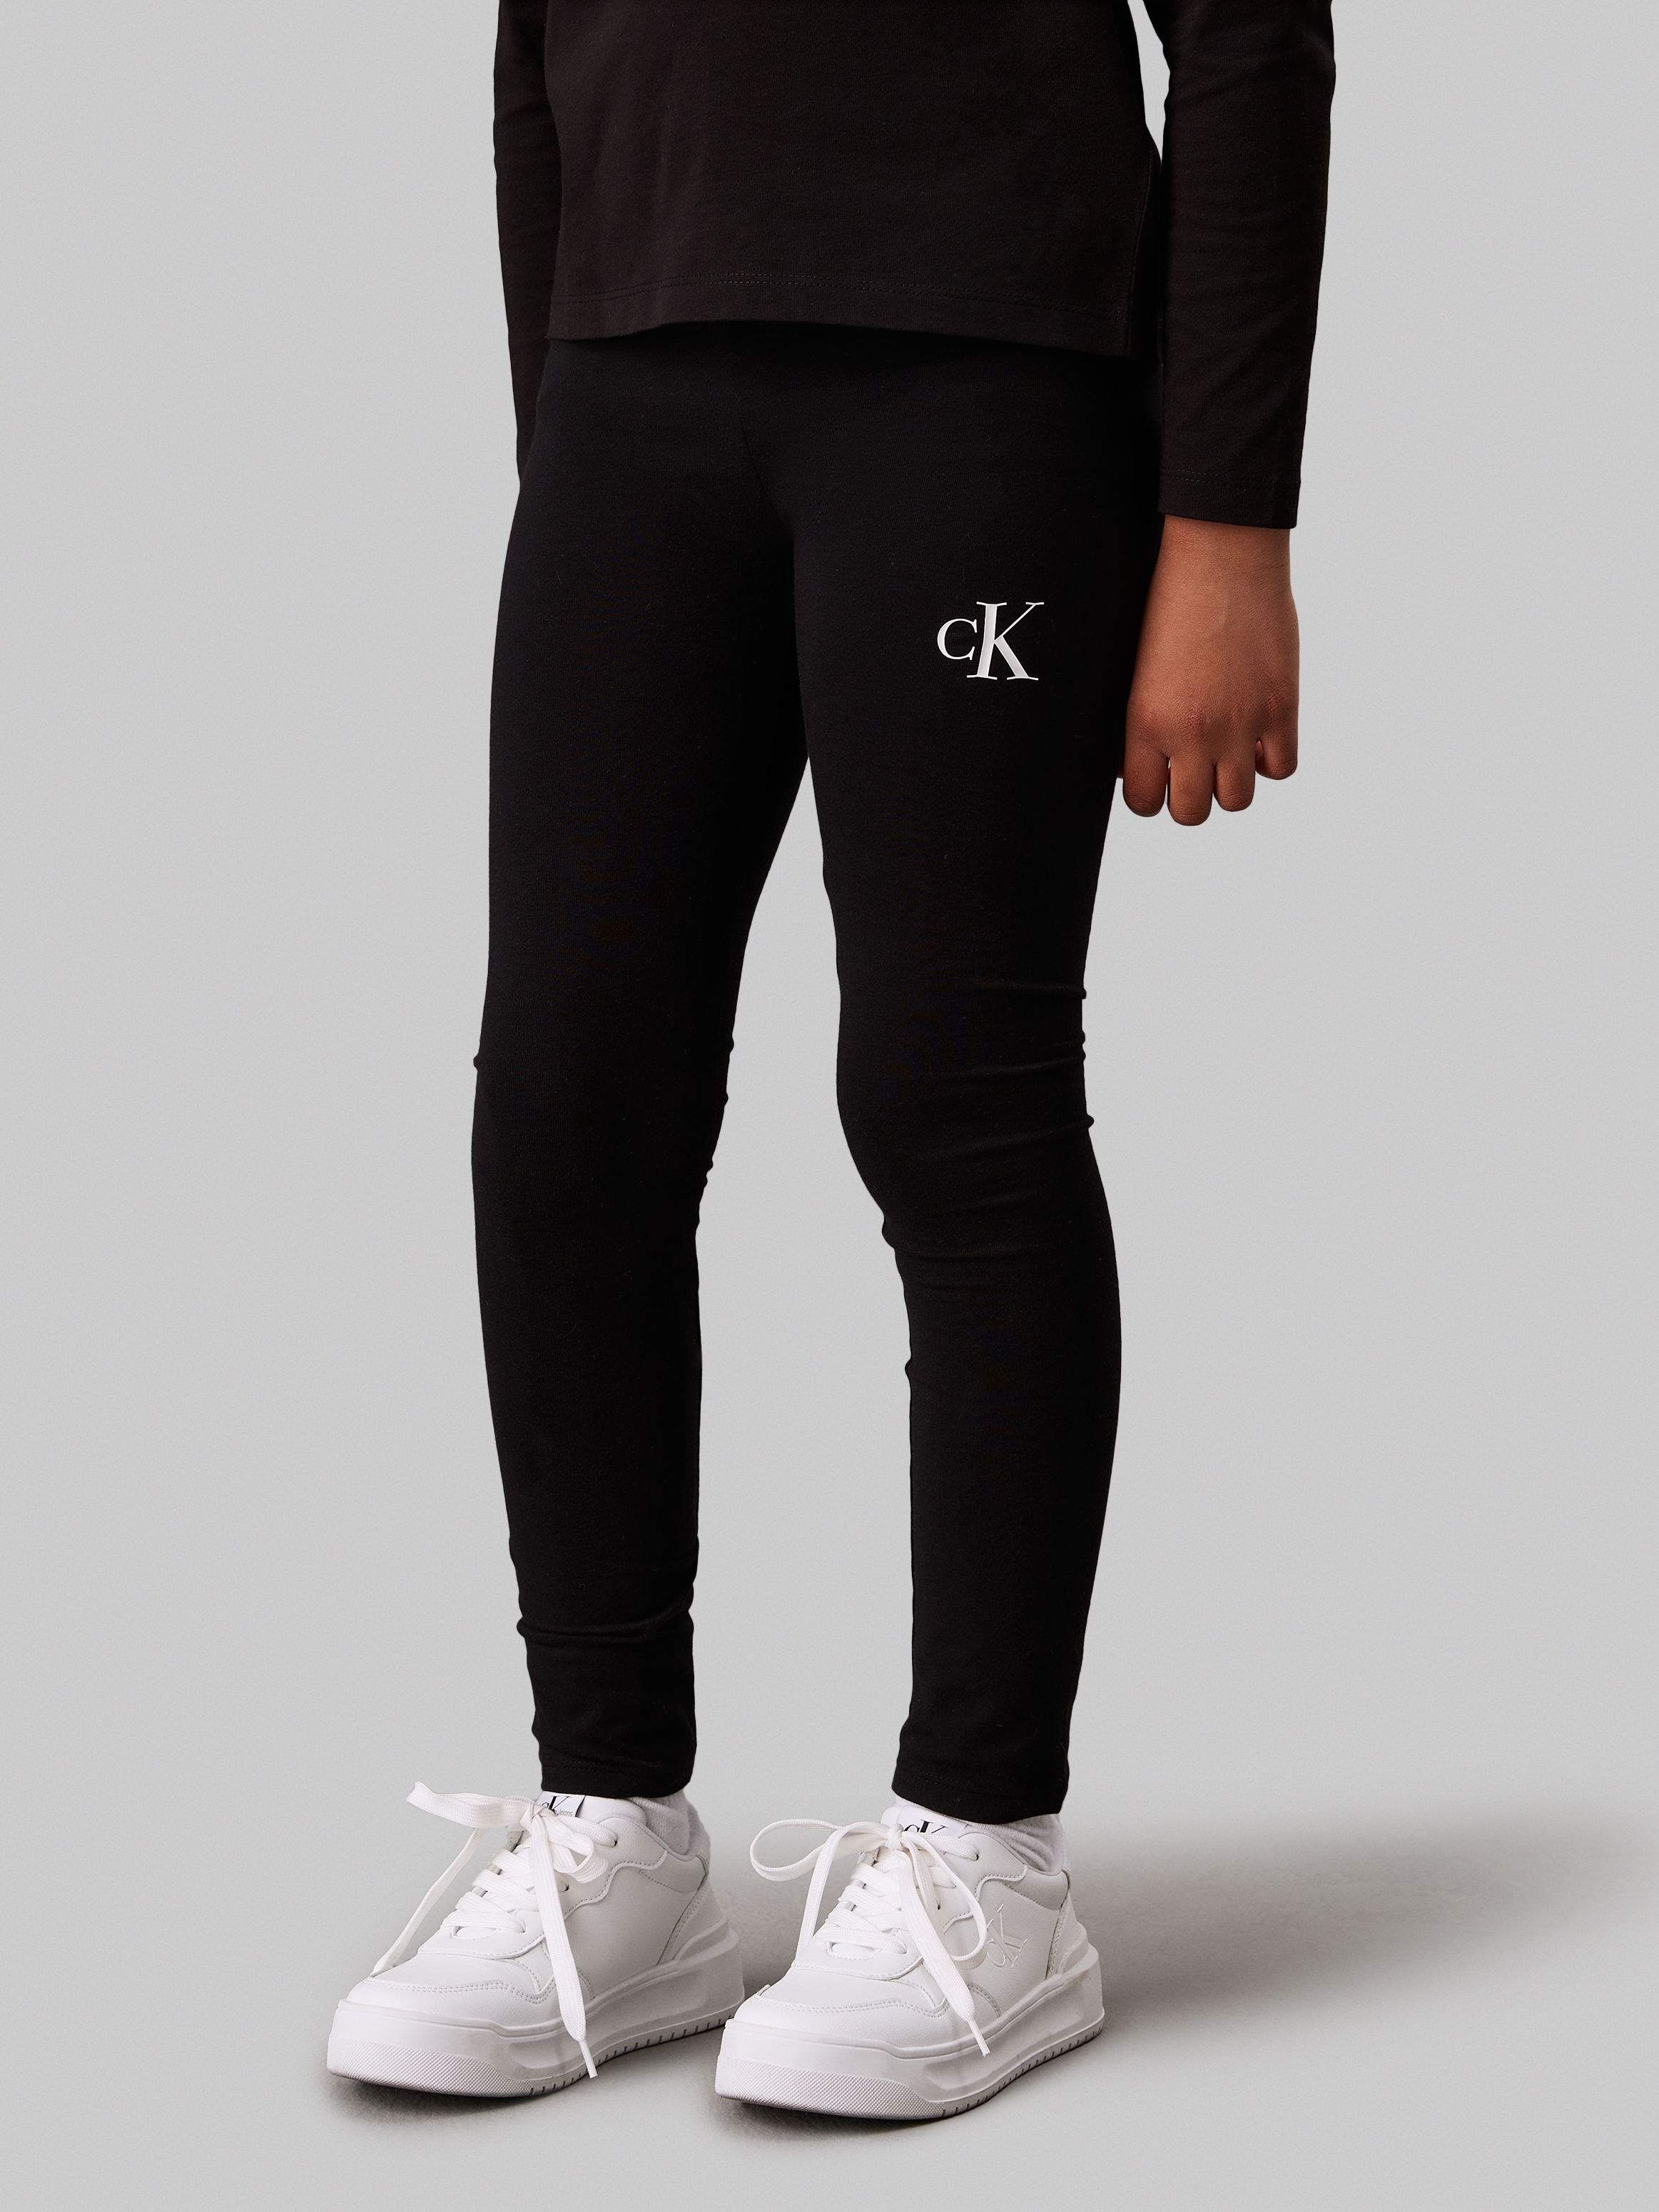 Calvin Klein Jeans Leggings »CK LOGO LEGGING«, für Kinder bis 16 Jahre